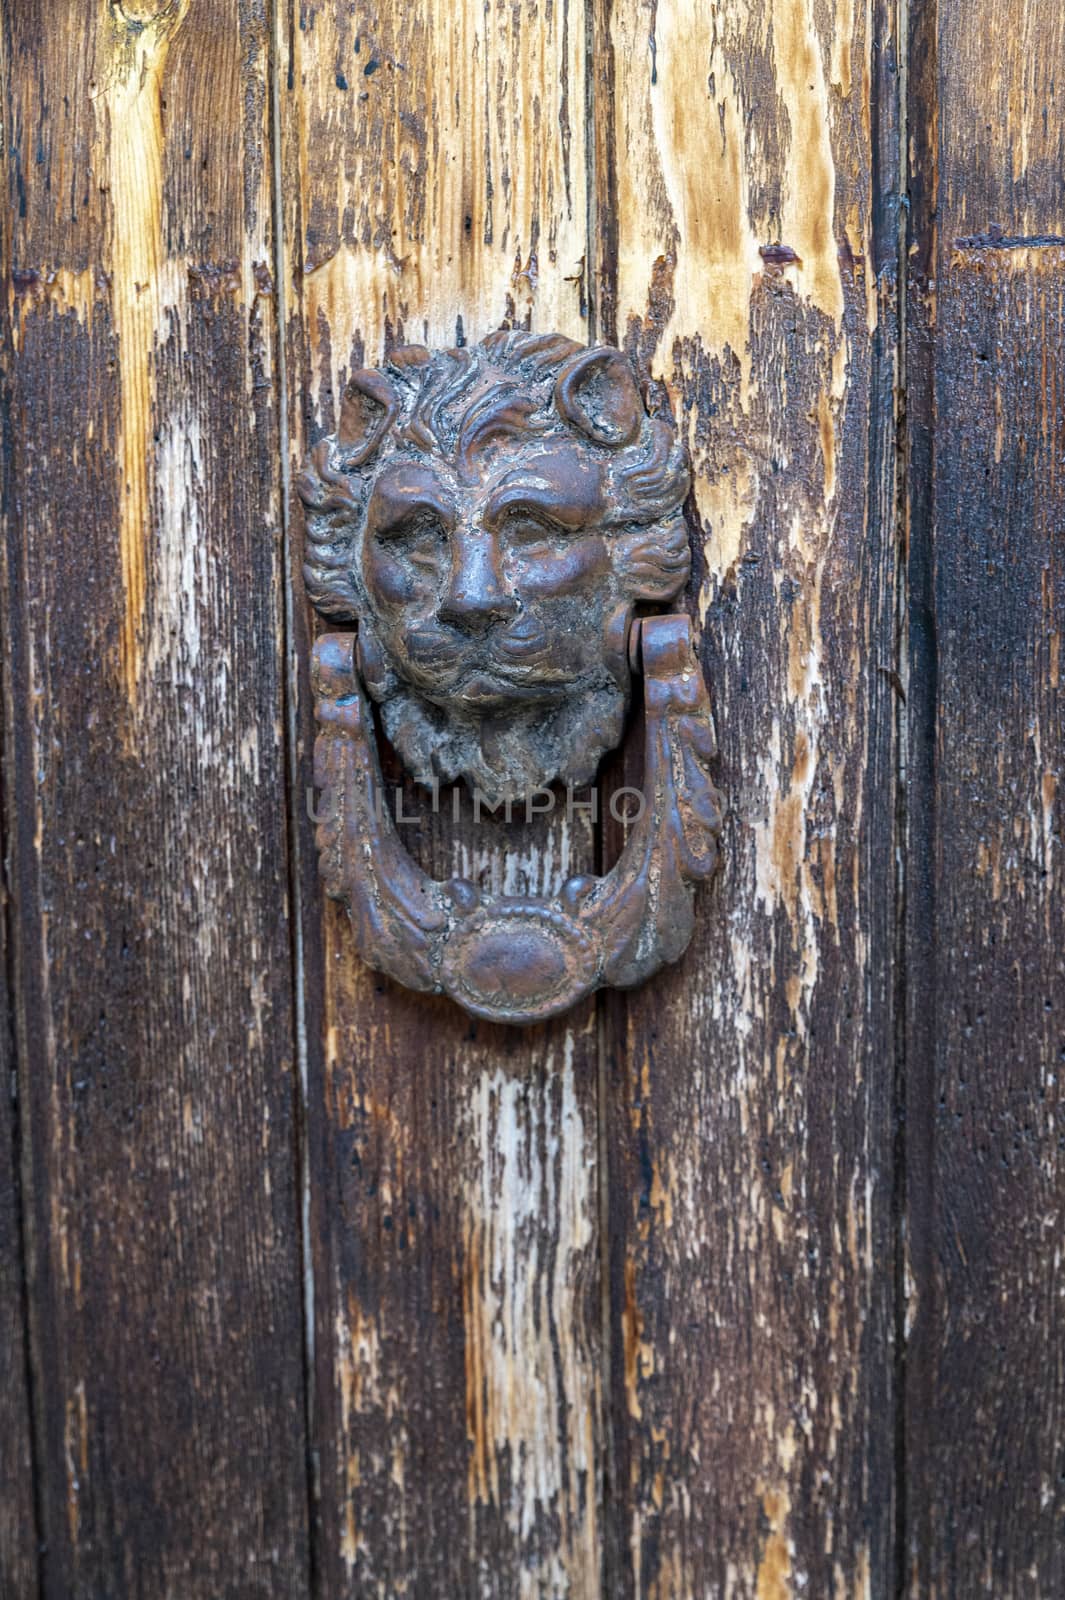 vintage door knocker in the shape of a lion on an old door